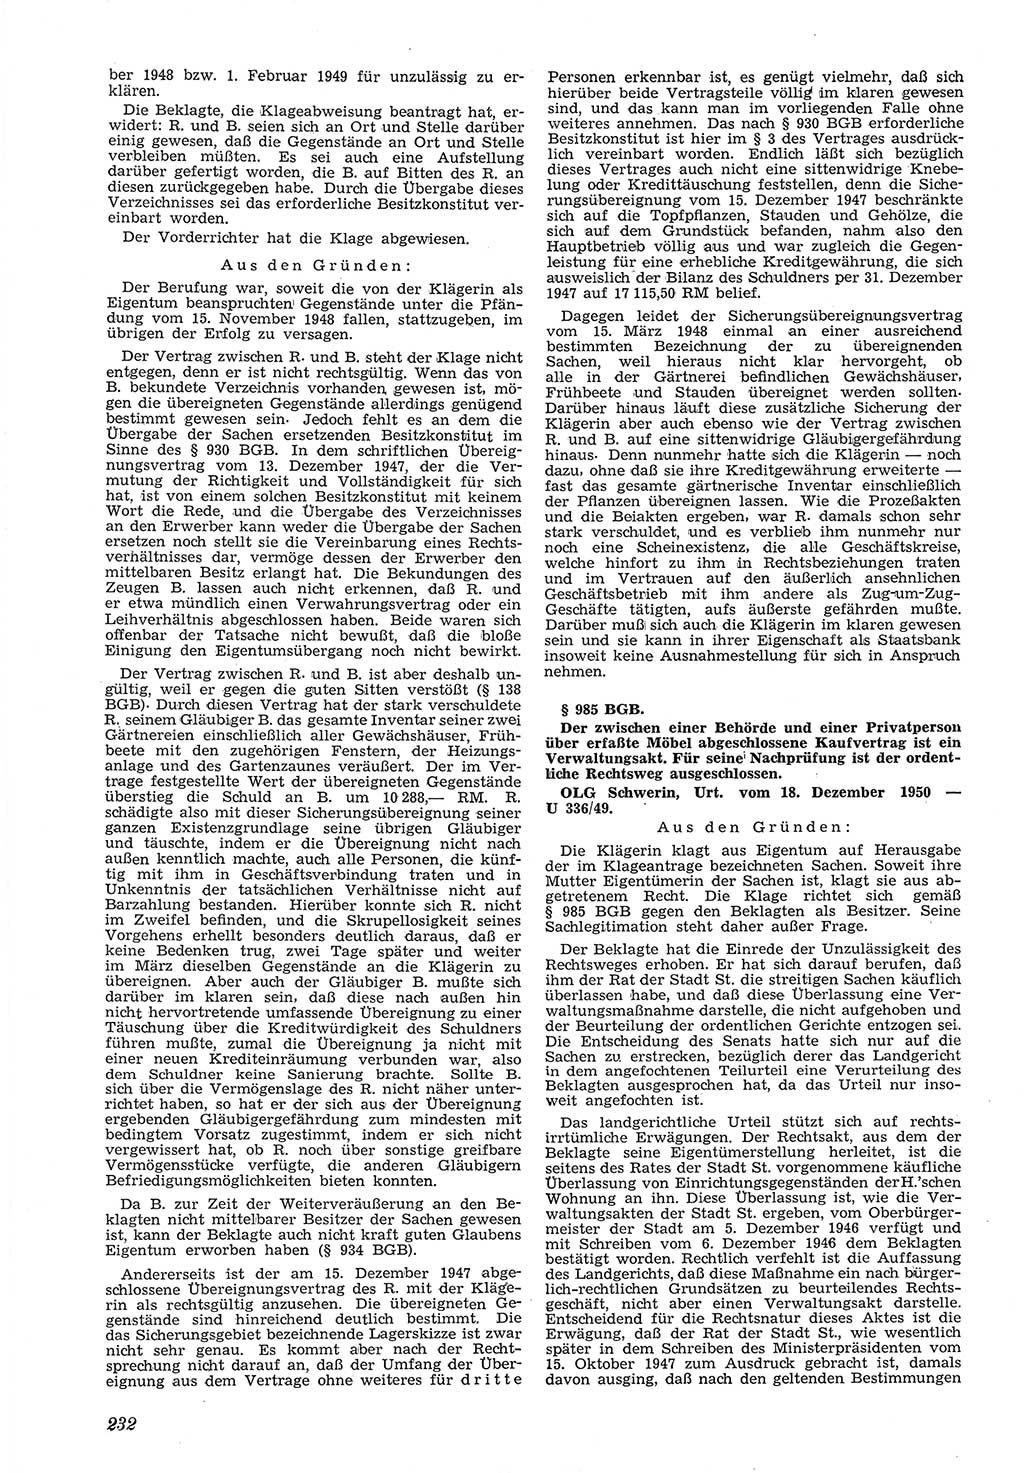 Neue Justiz (NJ), Zeitschrift für Recht und Rechtswissenschaft [Deutsche Demokratische Republik (DDR)], 5. Jahrgang 1951, Seite 232 (NJ DDR 1951, S. 232)